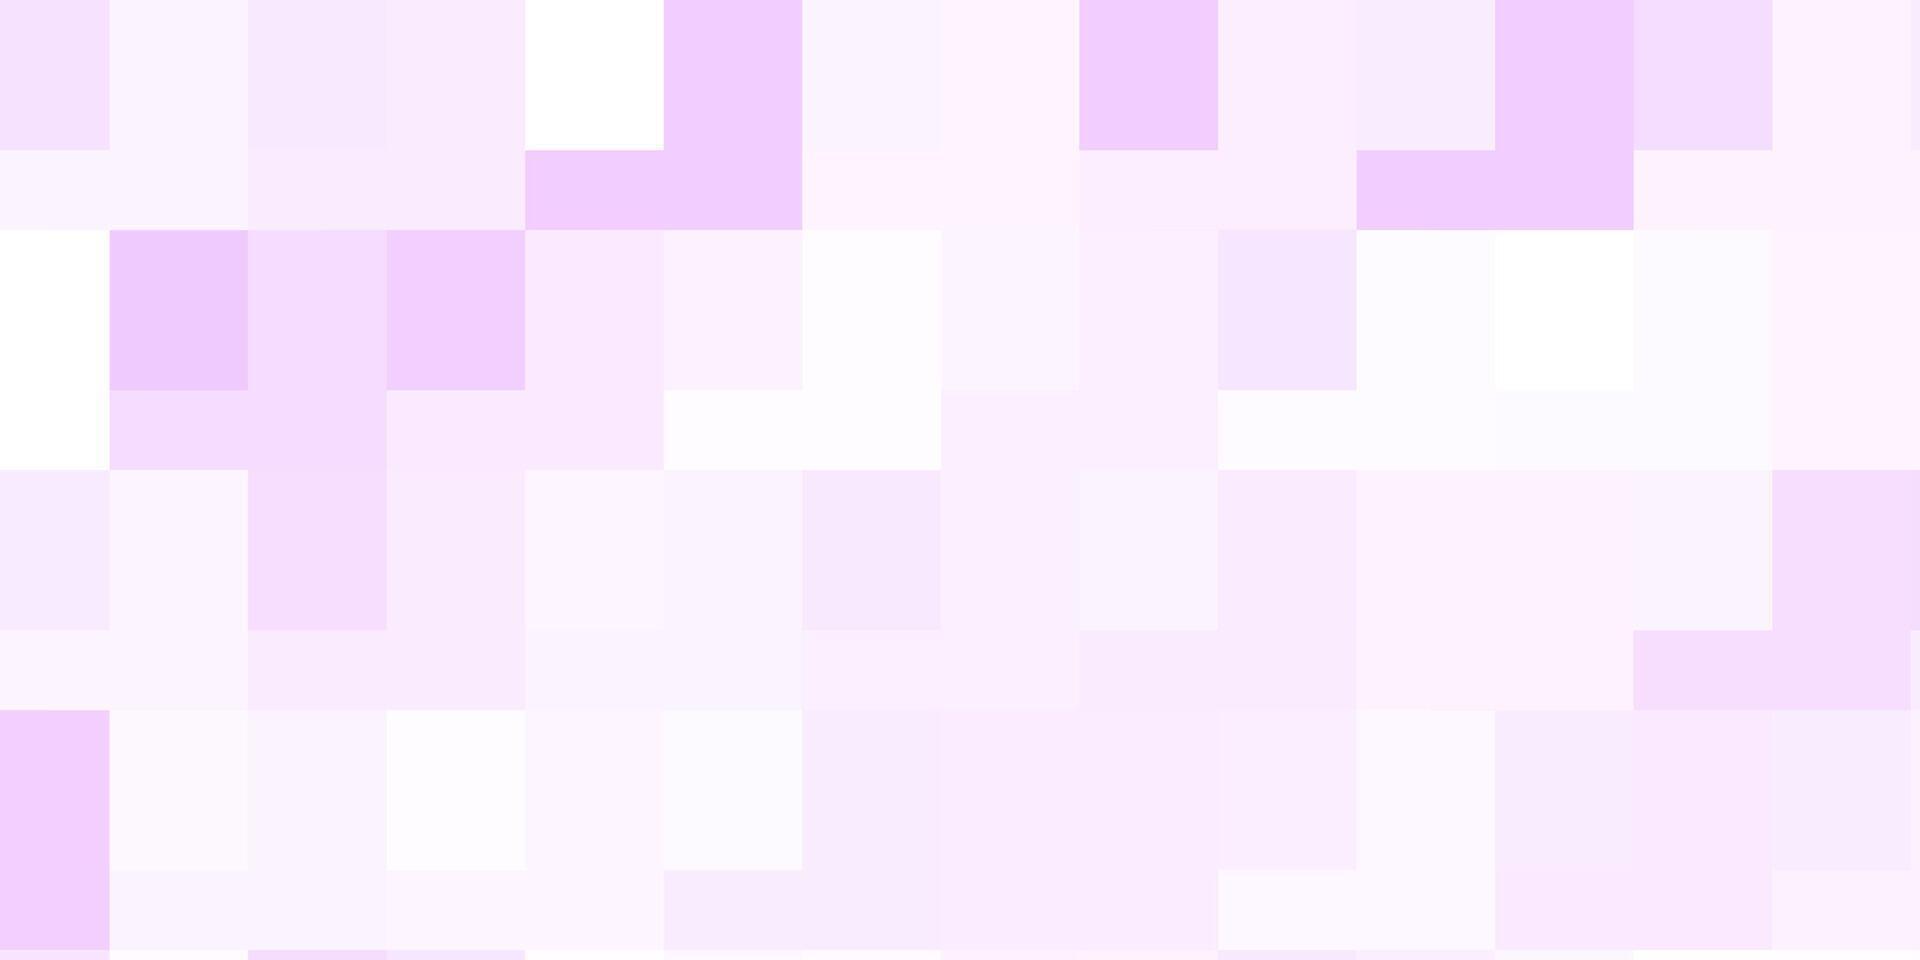 telón de fondo de vector púrpura claro con rectángulos.